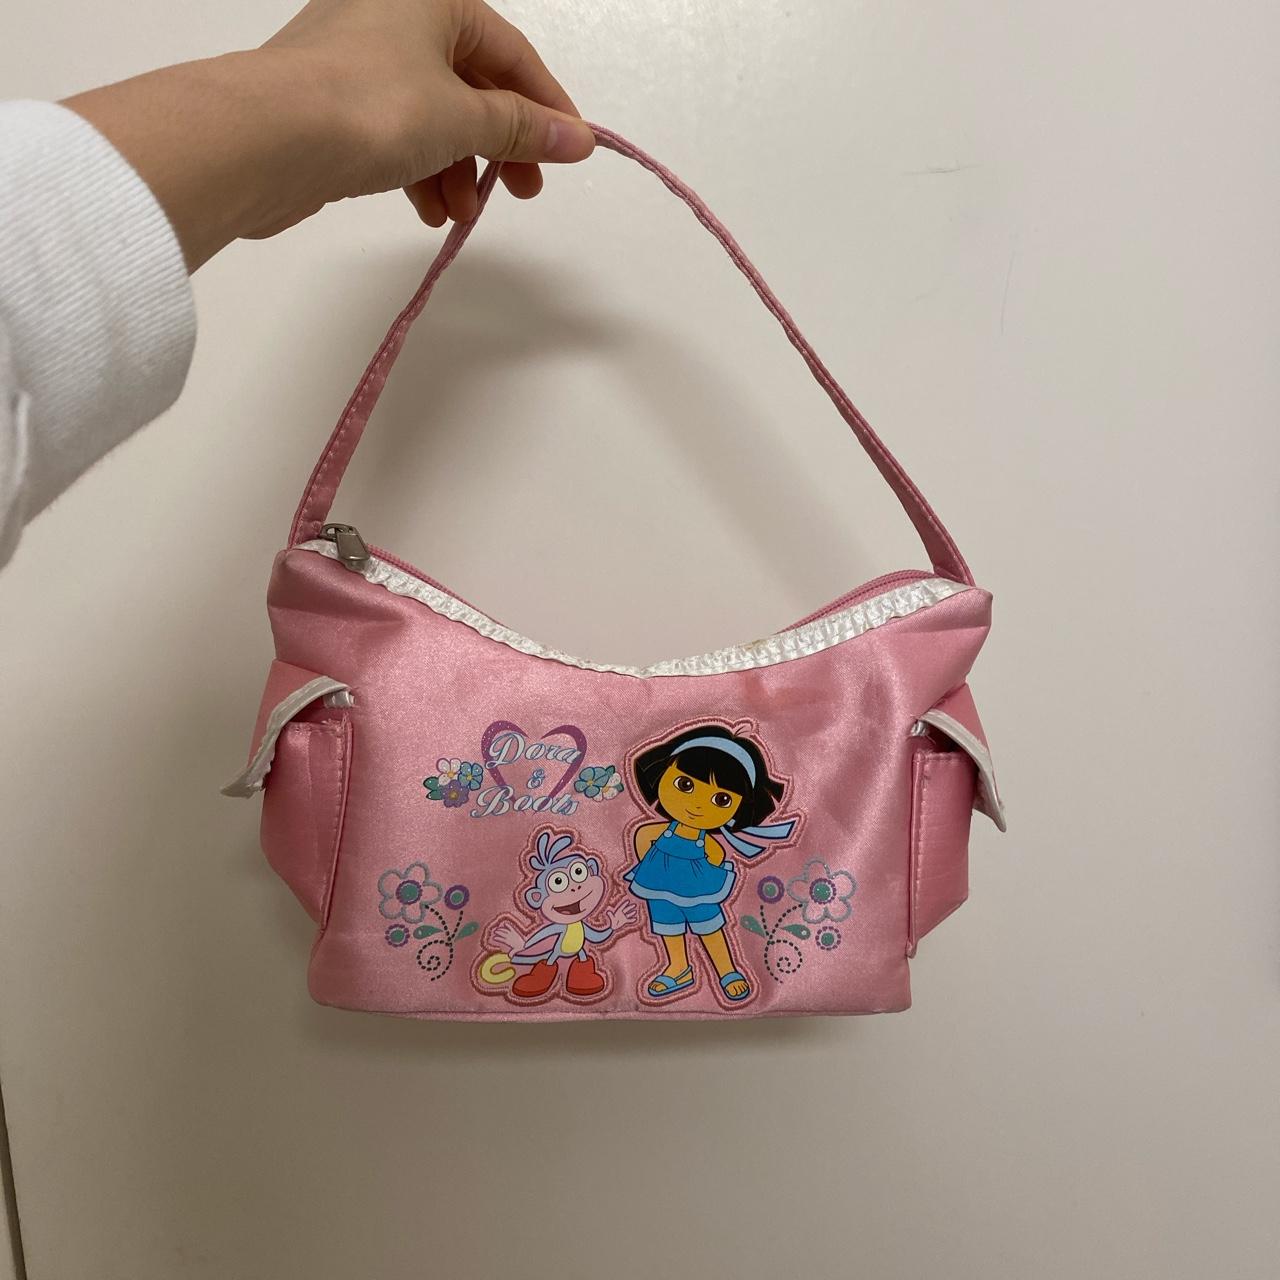 Handbag - Dora the Explorer - Ballet Adventures New Hand Bag Purse Girls  de21482 - Walmart.com